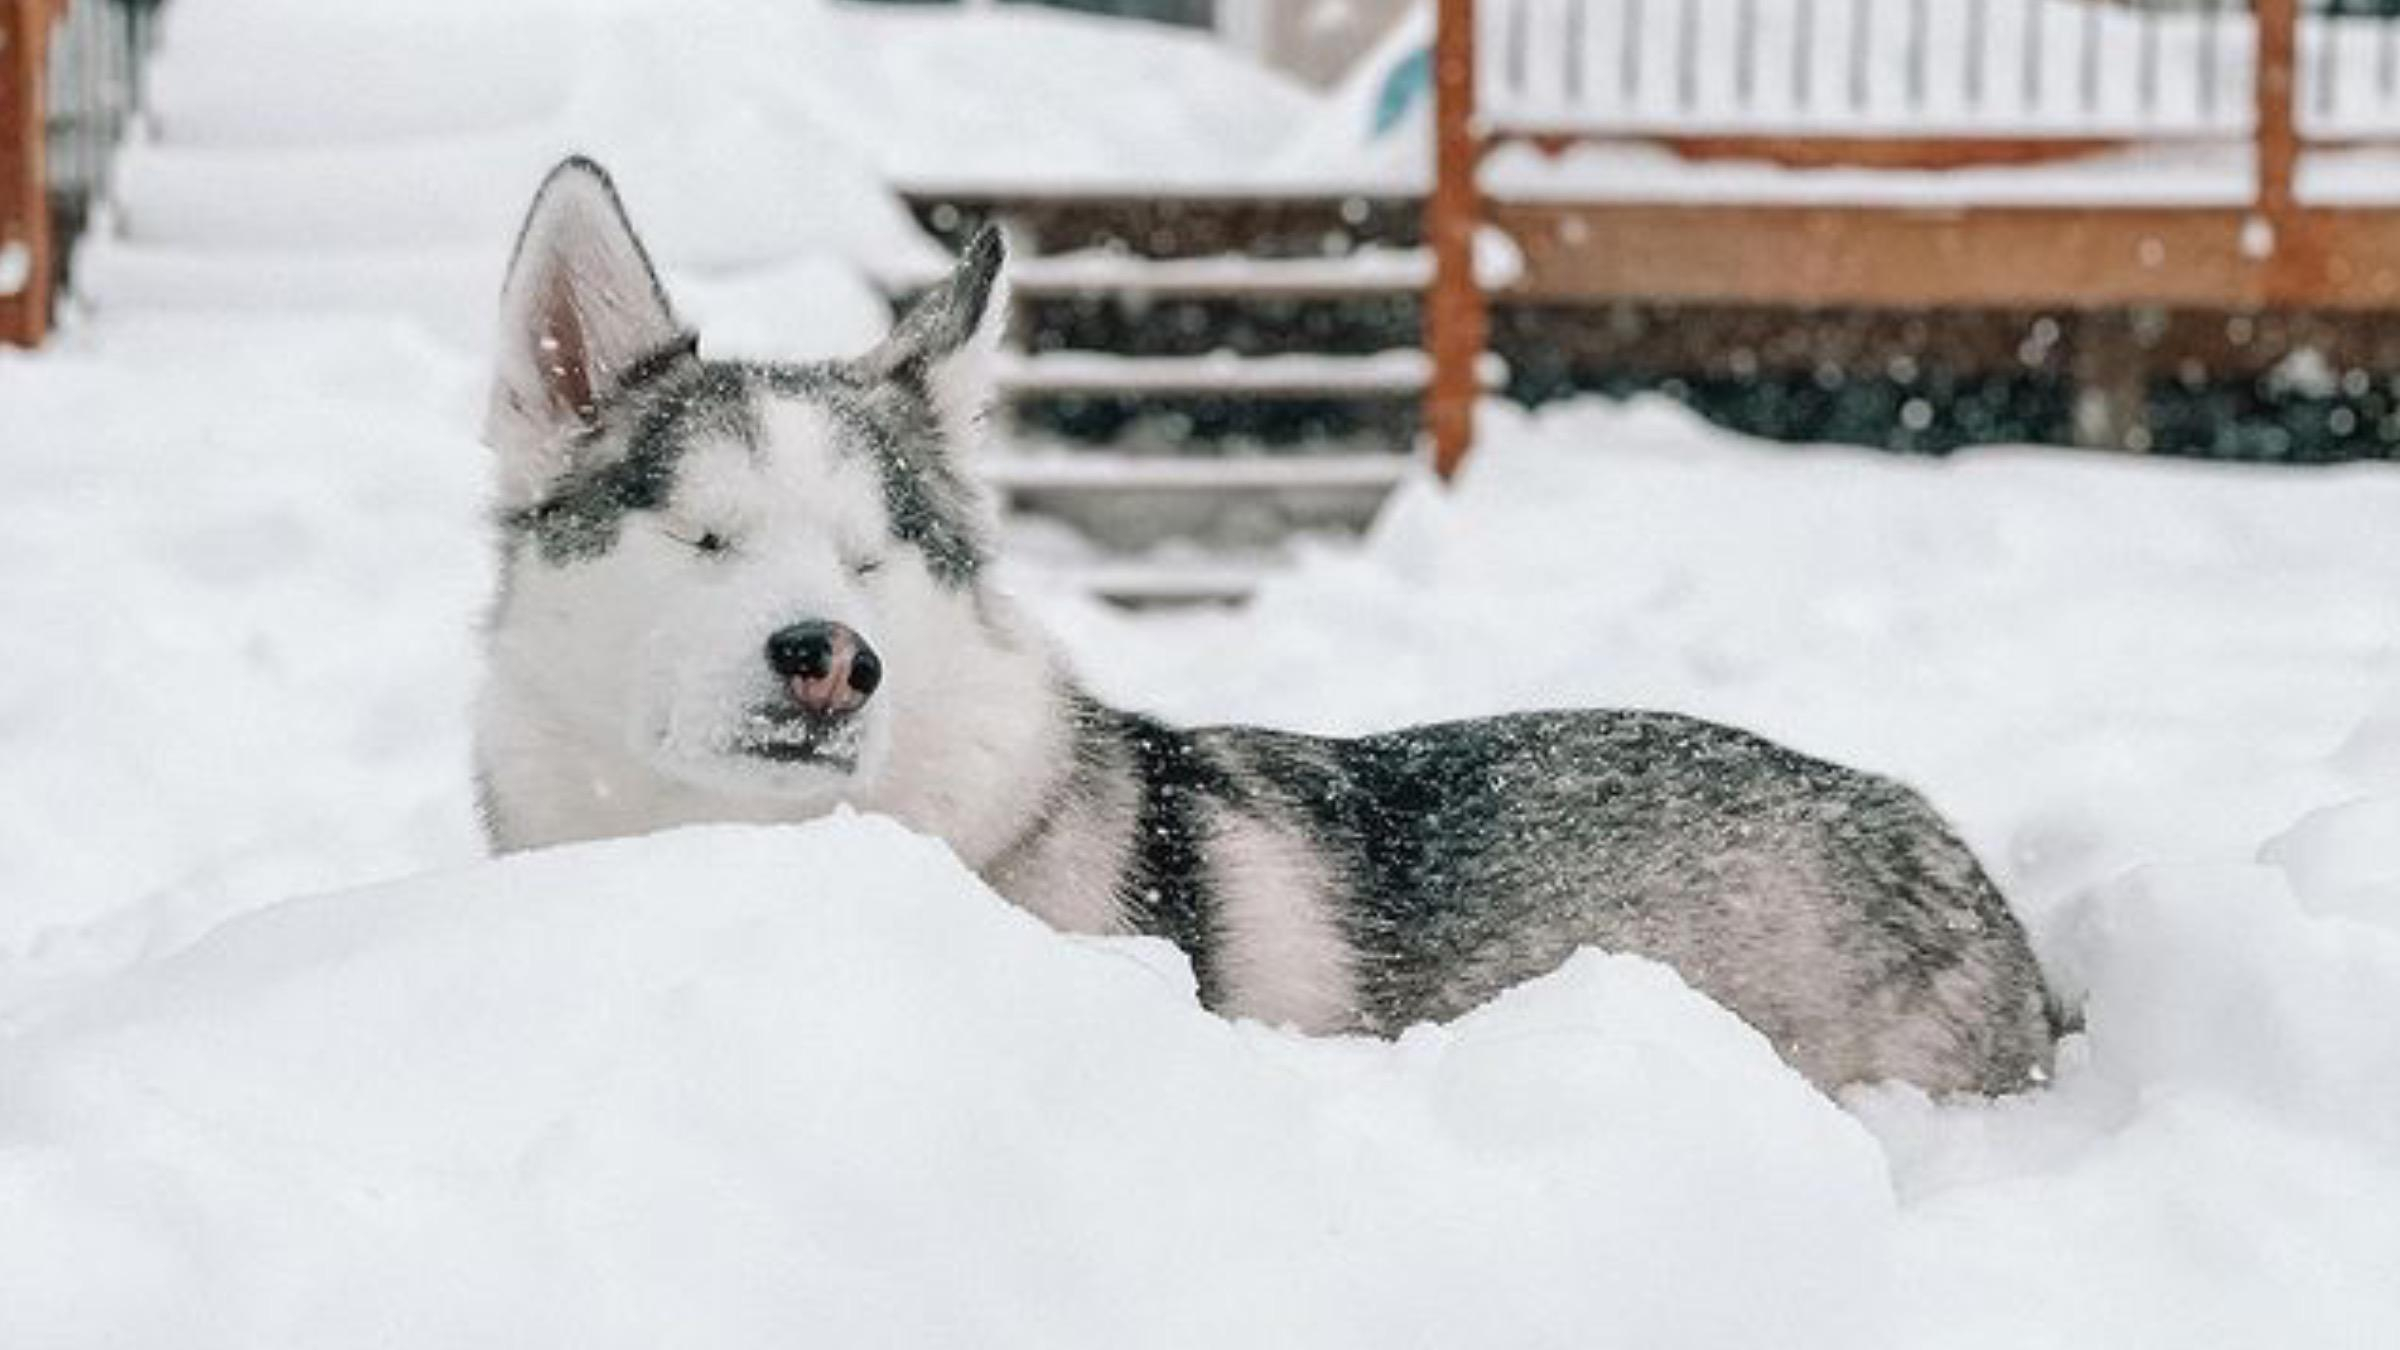 Не может видеть, однако чувствует: слепая собака любит играть в снегу - Pets